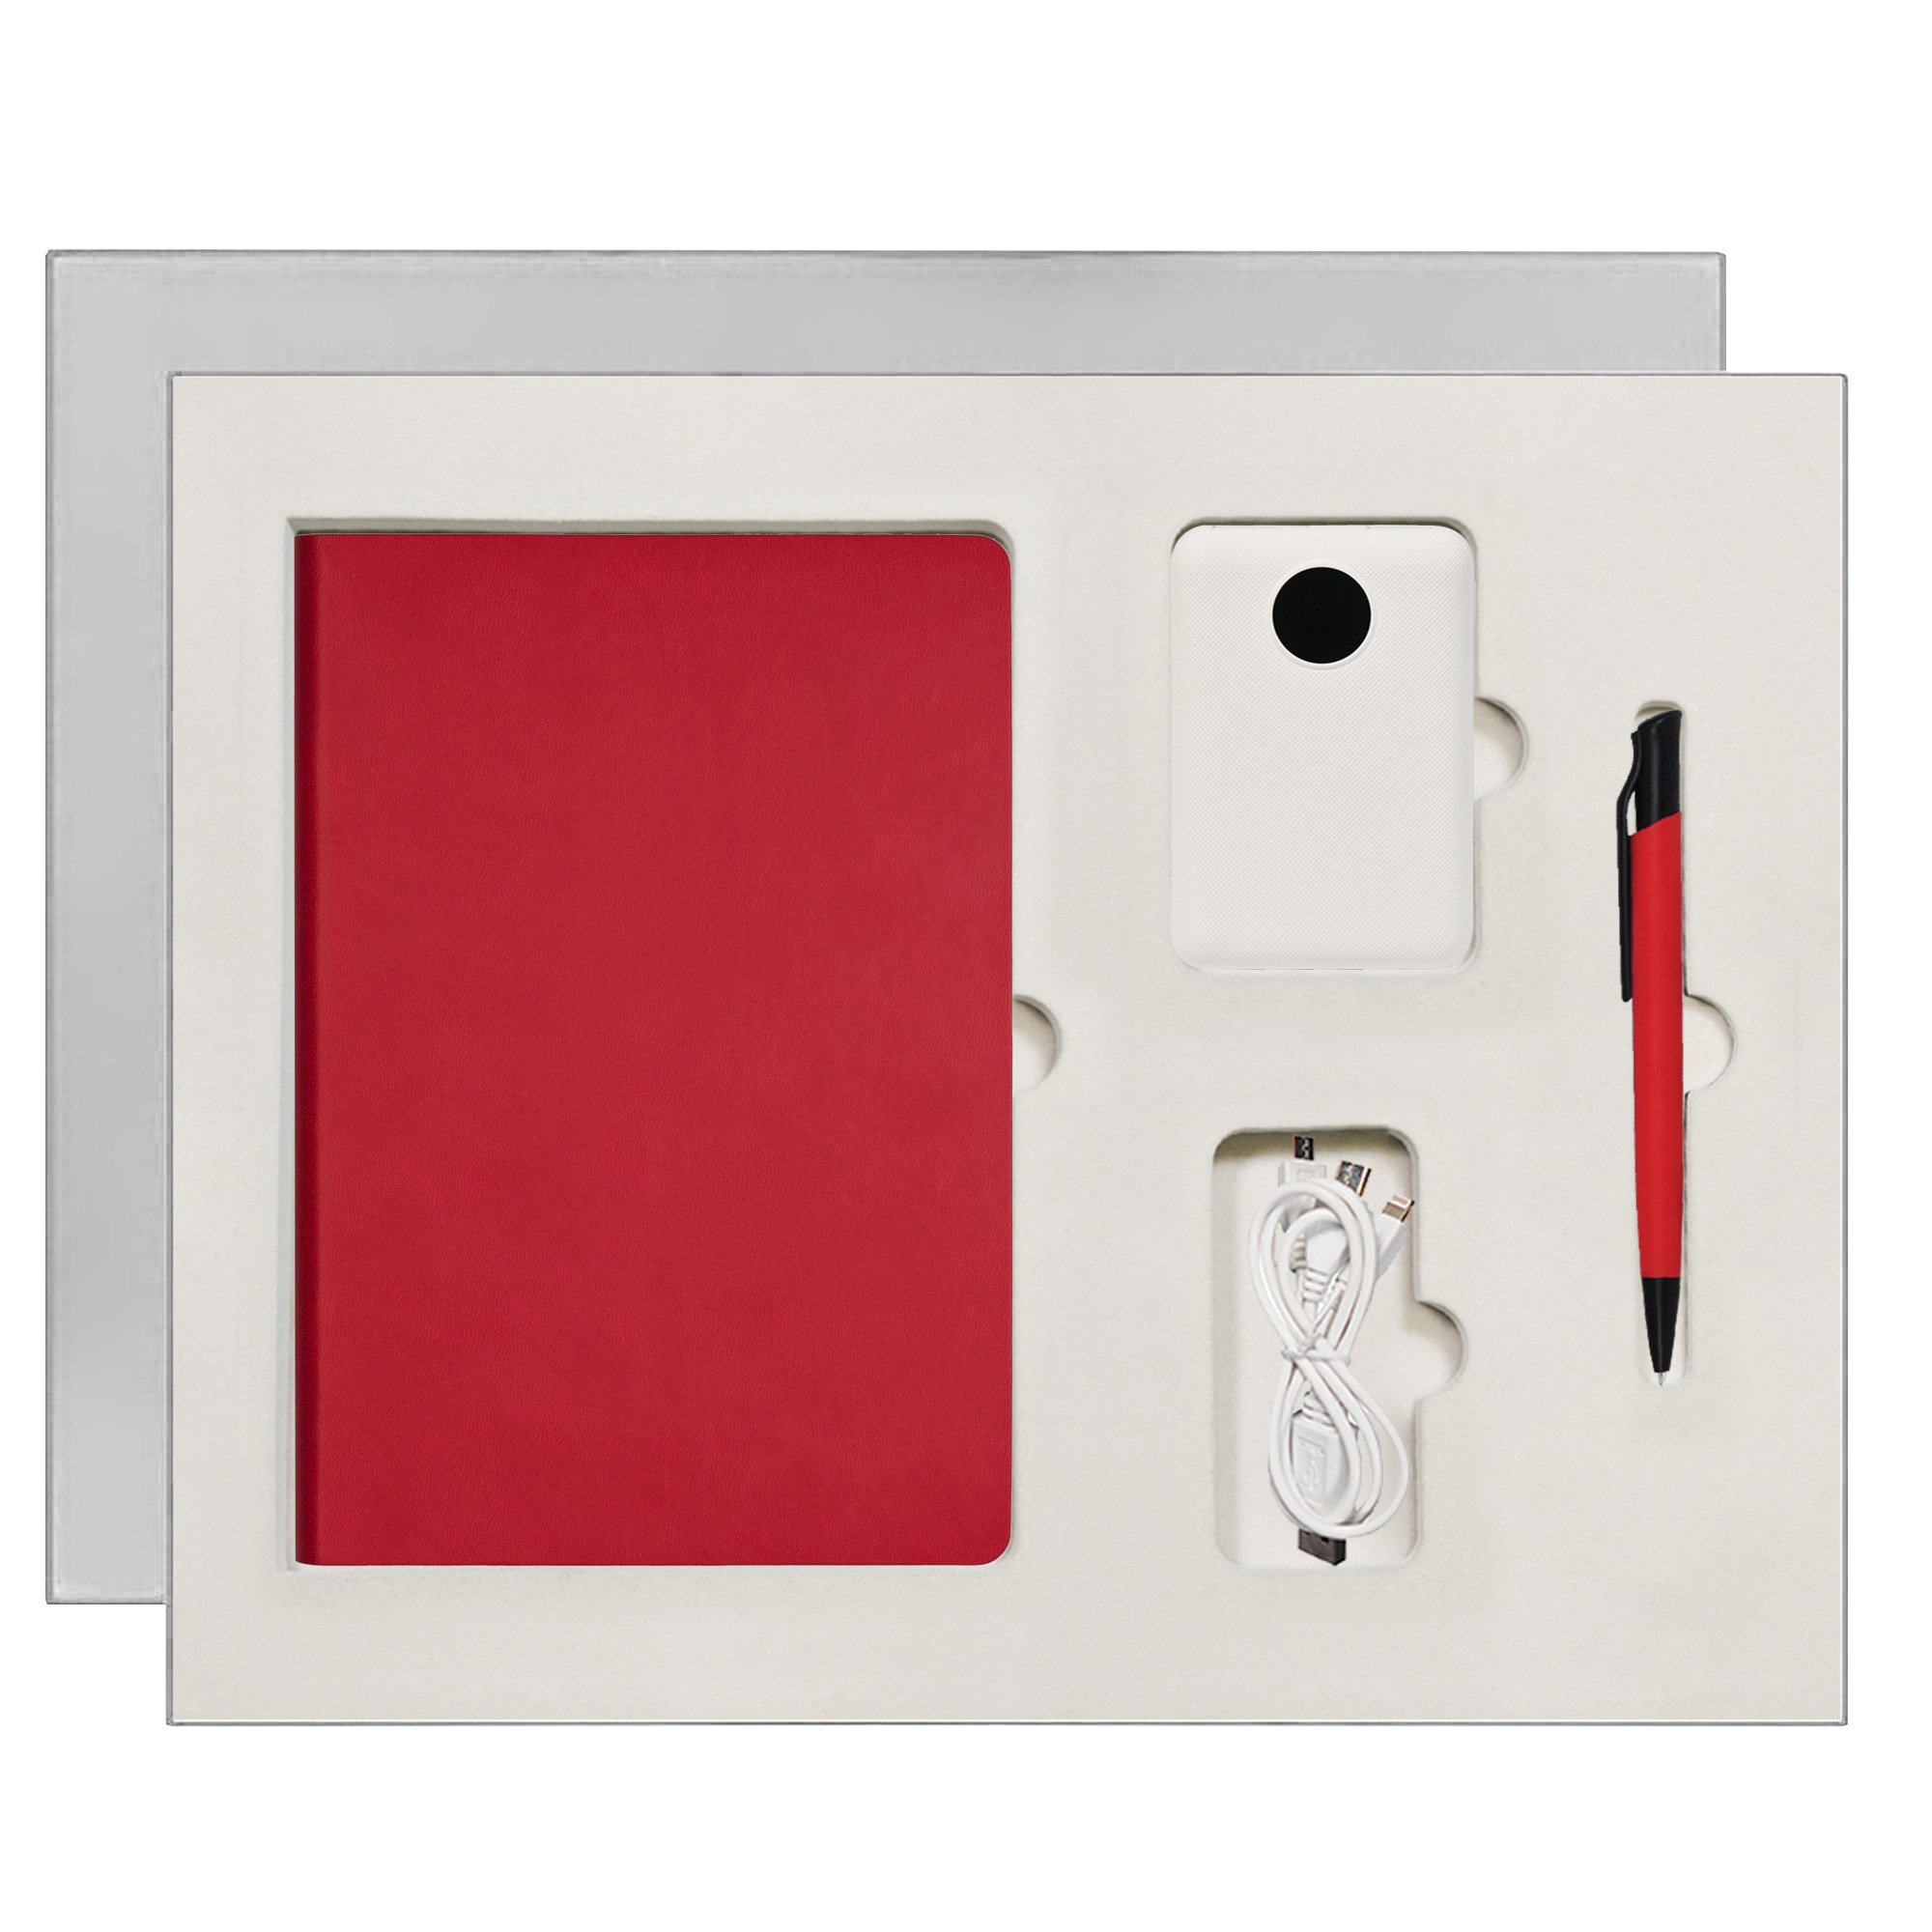 Подарочный набор Portobello/ Latte красно-белый (Ежедневник недат А5 Ручка Power Bank)